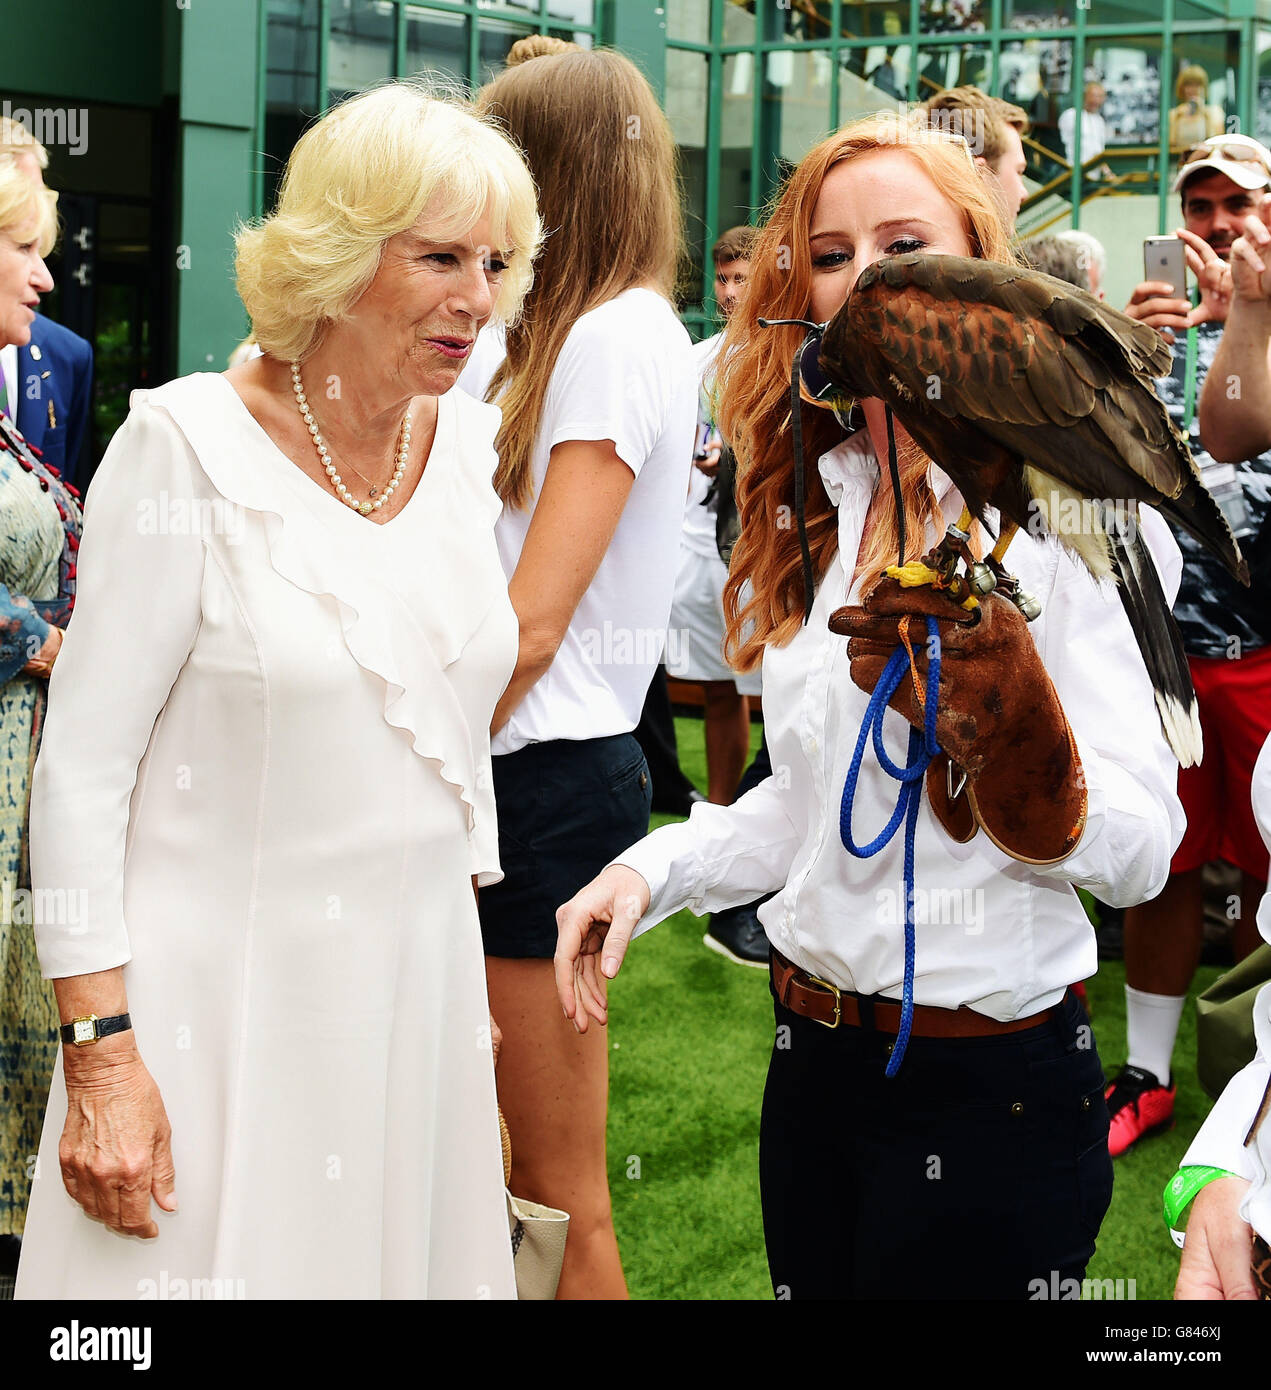 La Duchessa di Cornovaglia incontra Imogen Davis (a destra) e Hawk Rufus durante una visita ai campionati di tennis del Lawn all'All England Lawn Tennis Club di Wimbledon a Londra. Foto Stock